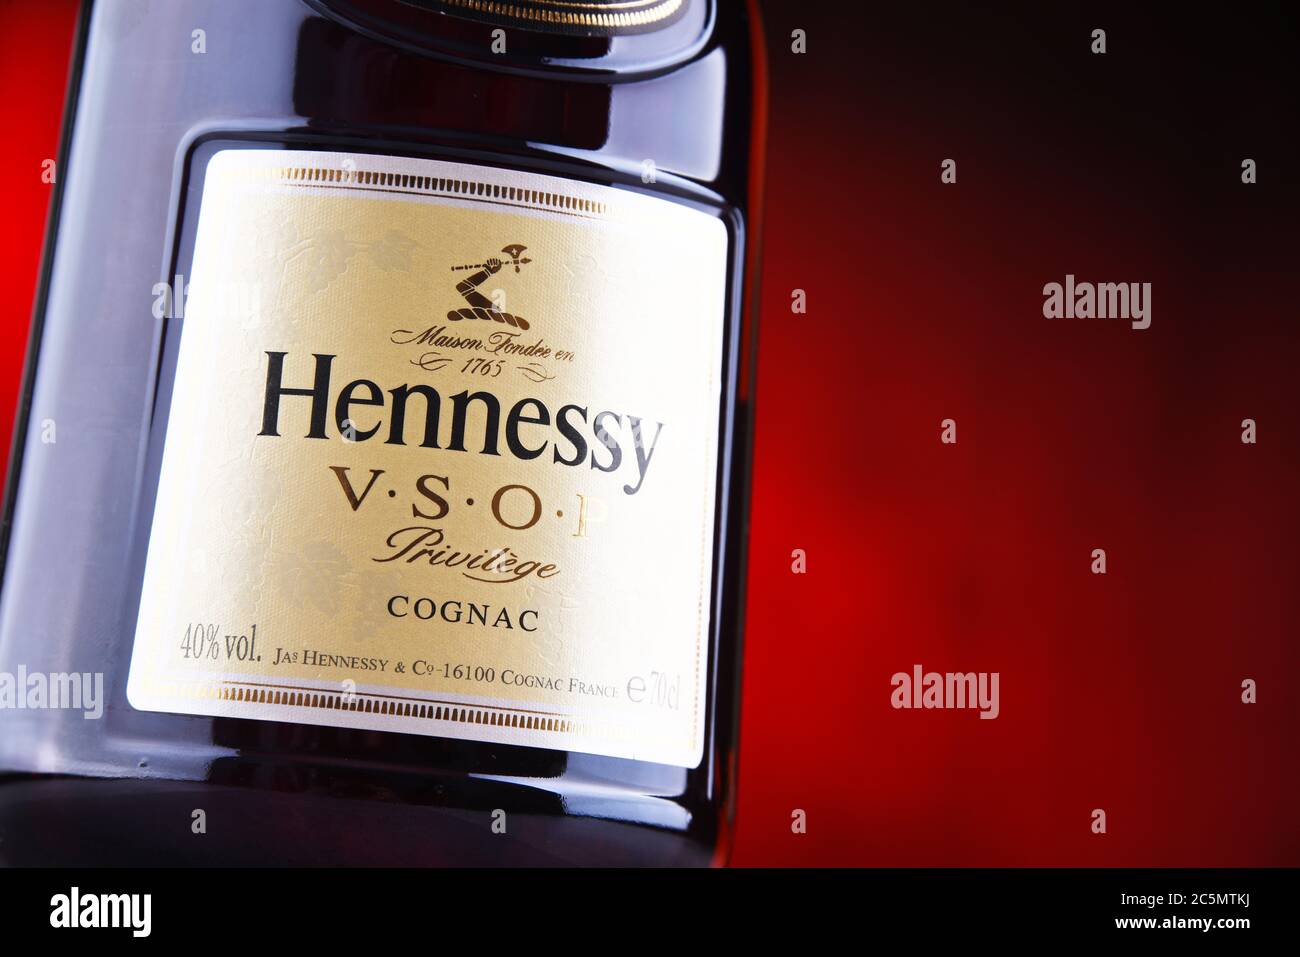 POZNAN, POL - JUN 24, 2020: Botella de Hennessy, una Marca de coñac famoso de Cognac, Francia Foto de stock